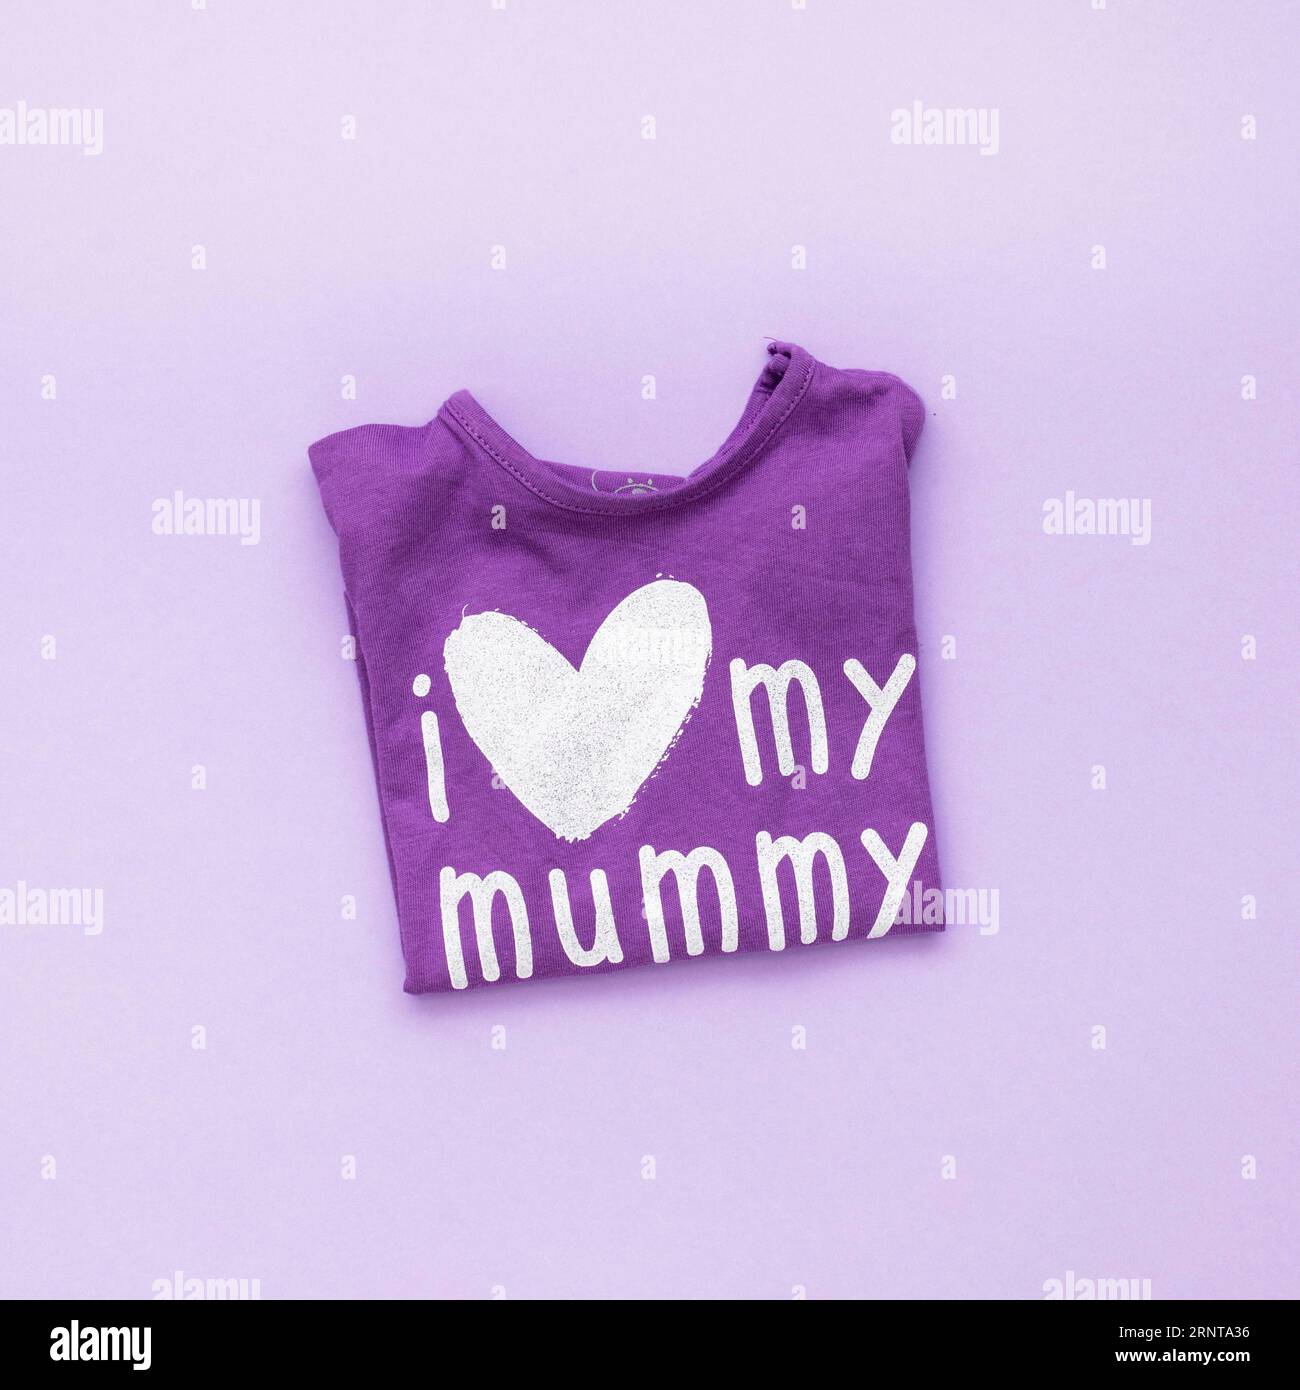 I love my mummy inscription t shirt Stock Photo